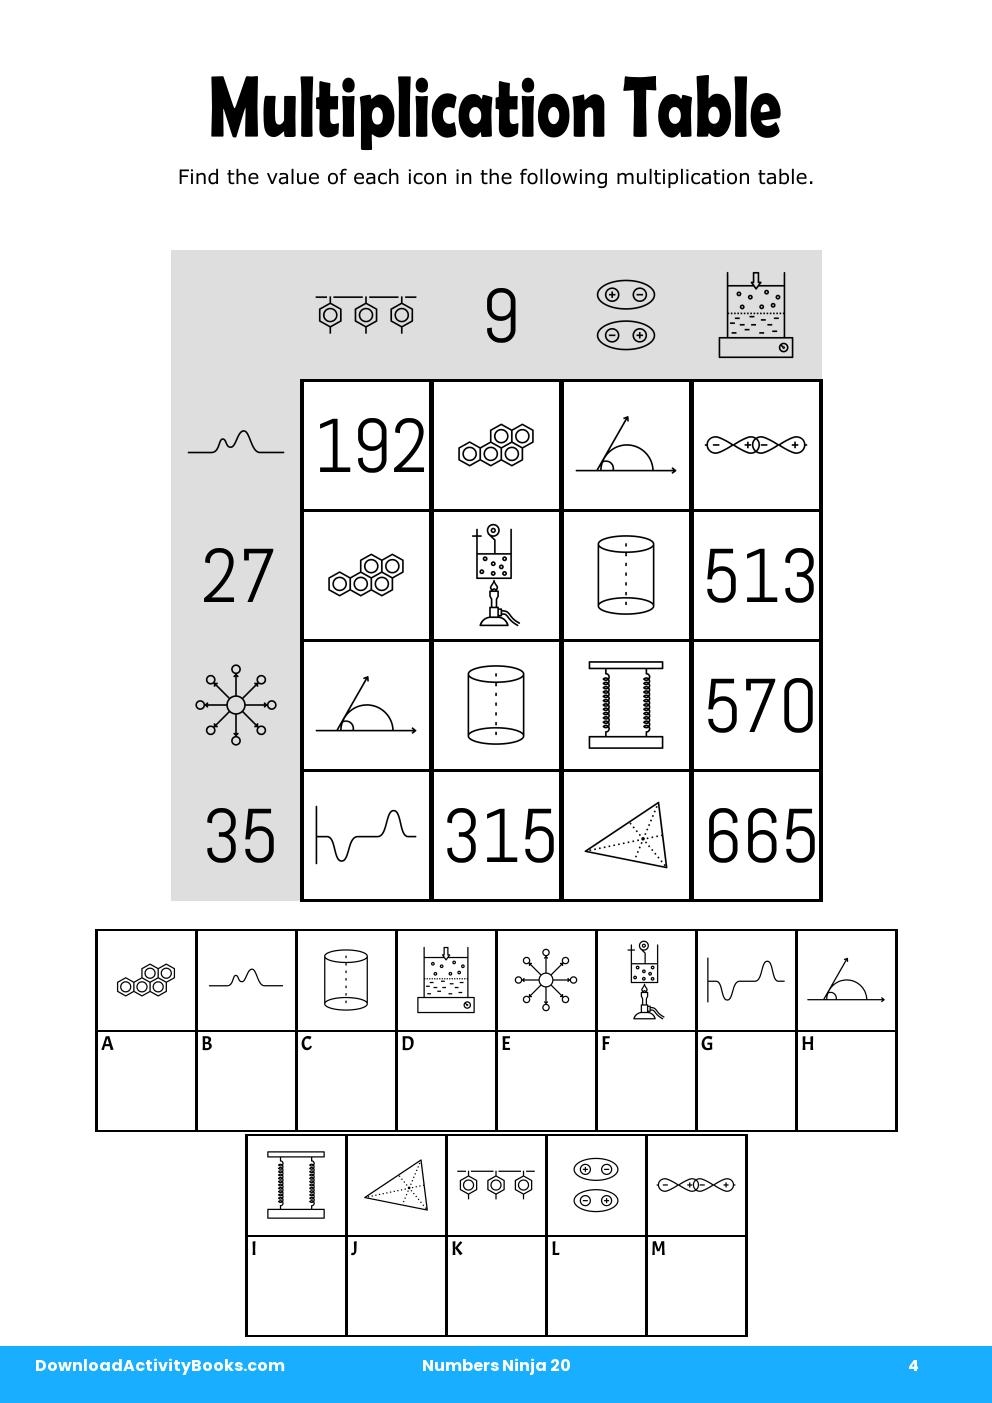 Multiplication Table in Numbers Ninja 20